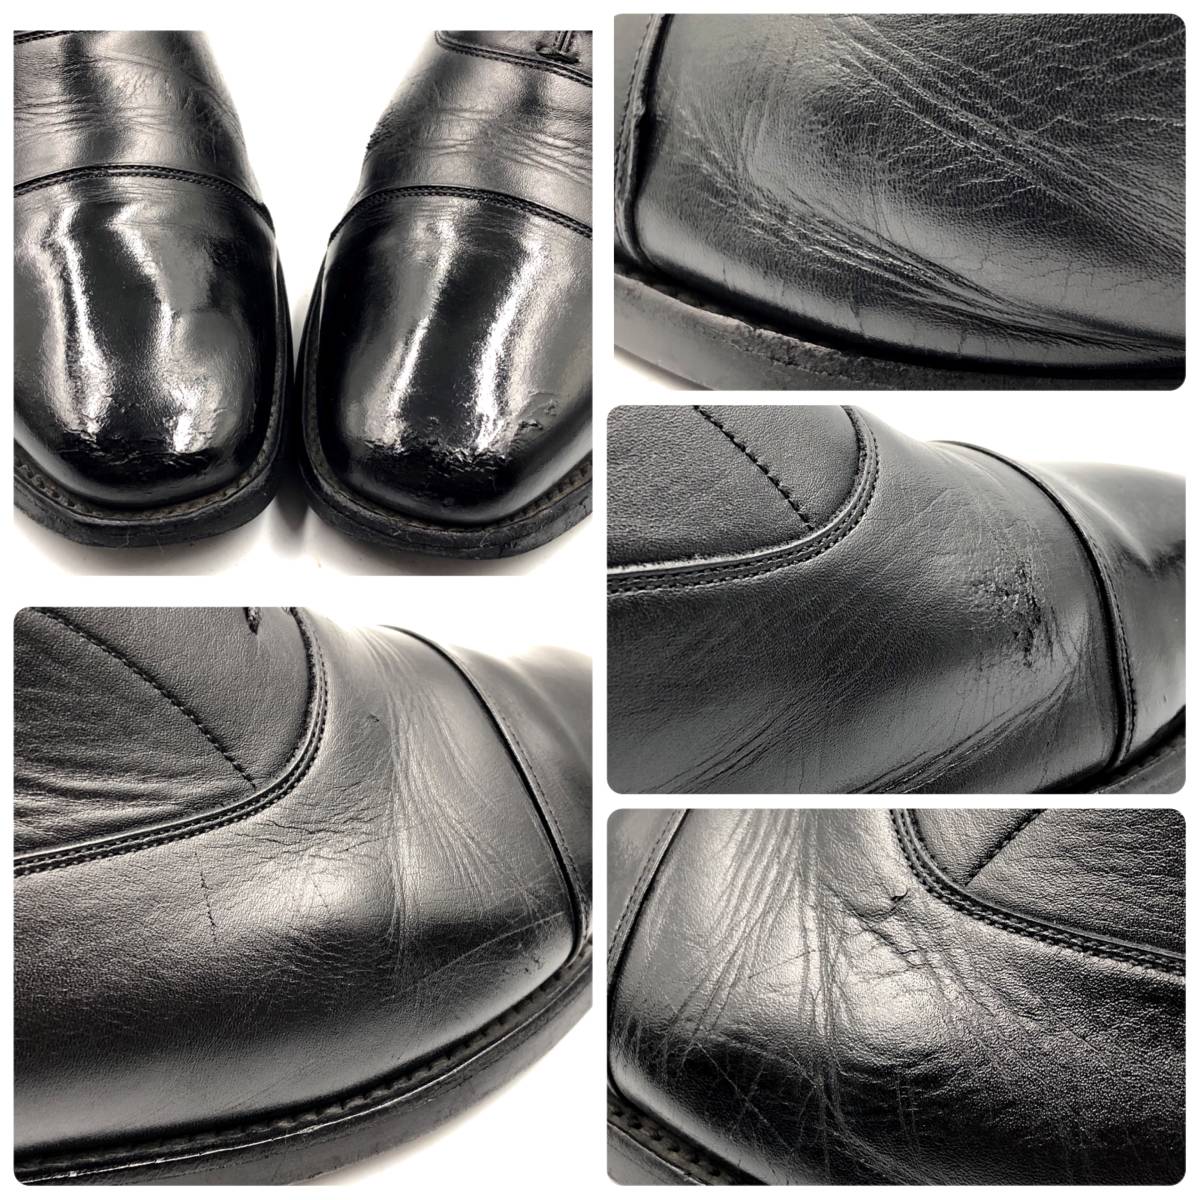 即決 SCOTCH GRAIN スコッチグレイン 26.5cmEEE OPS-4001 メンズ レザーシューズ ストレートチップ 黒 ブラック 革靴 皮靴 ビジネス